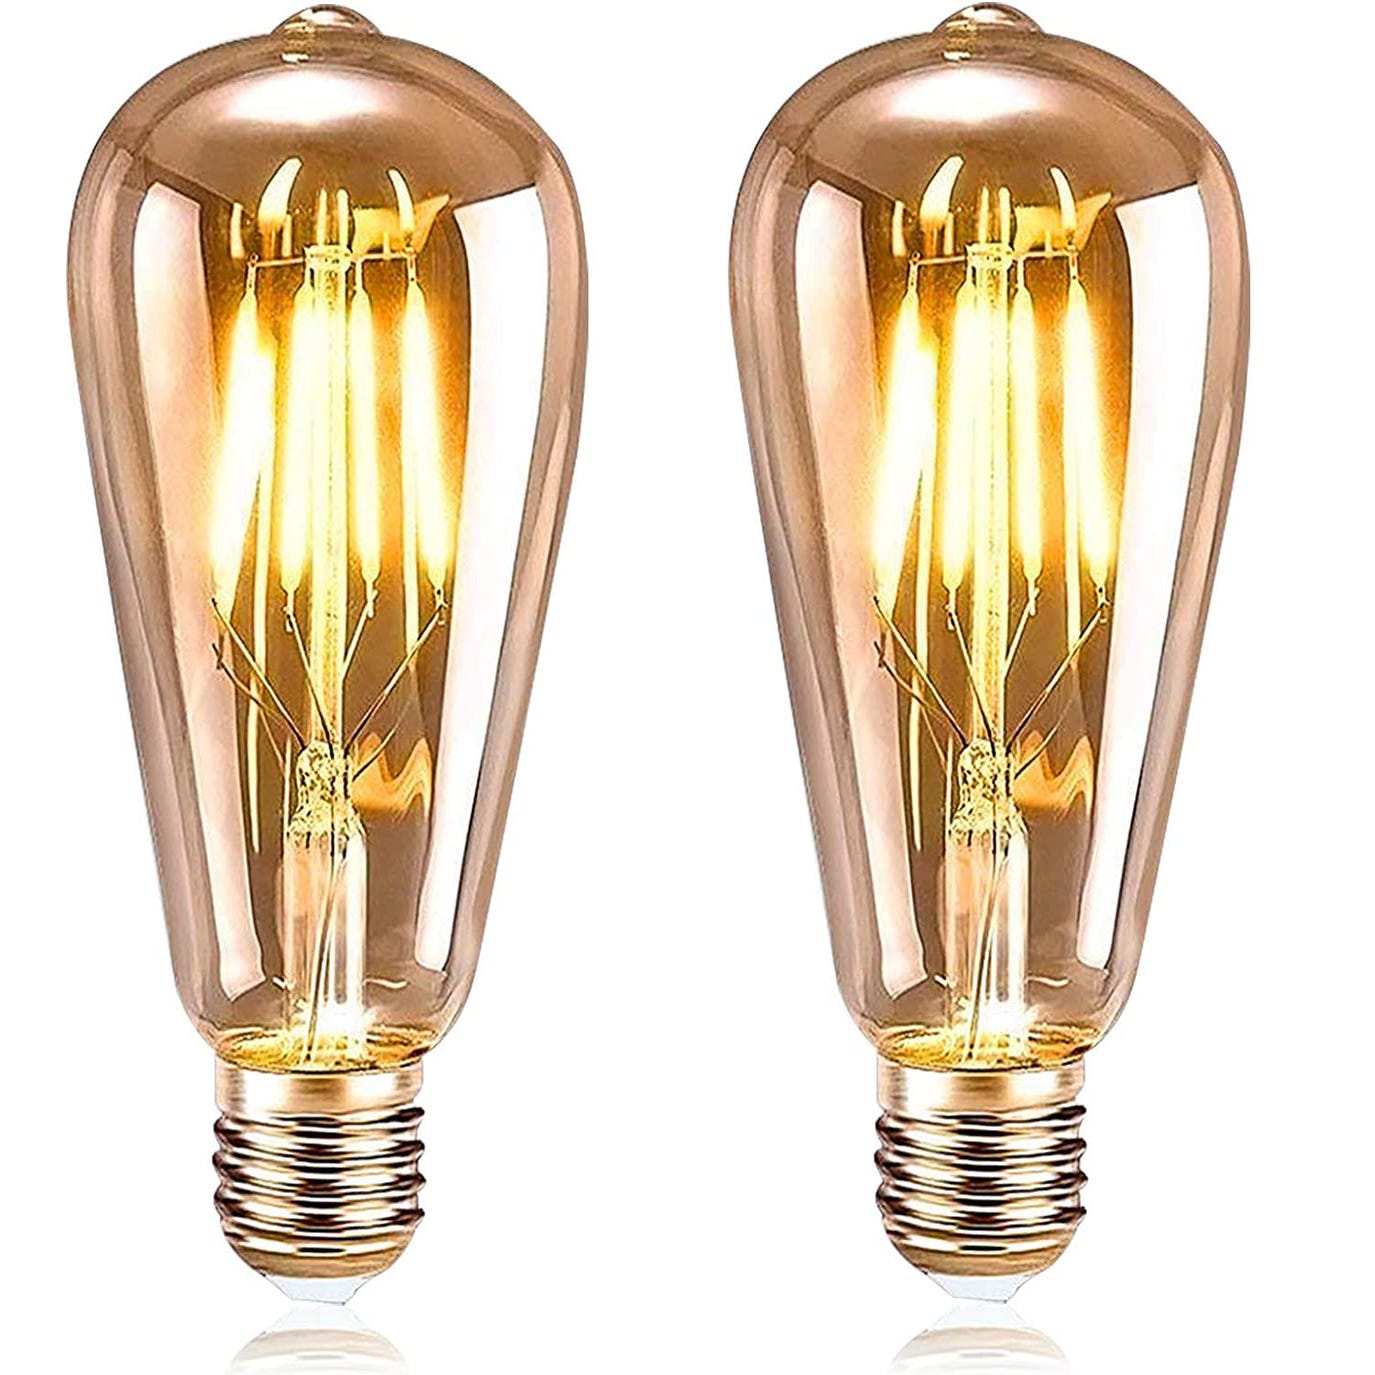 Ampoule LED - Lampe LED : éclairage de qualité au meilleur prix